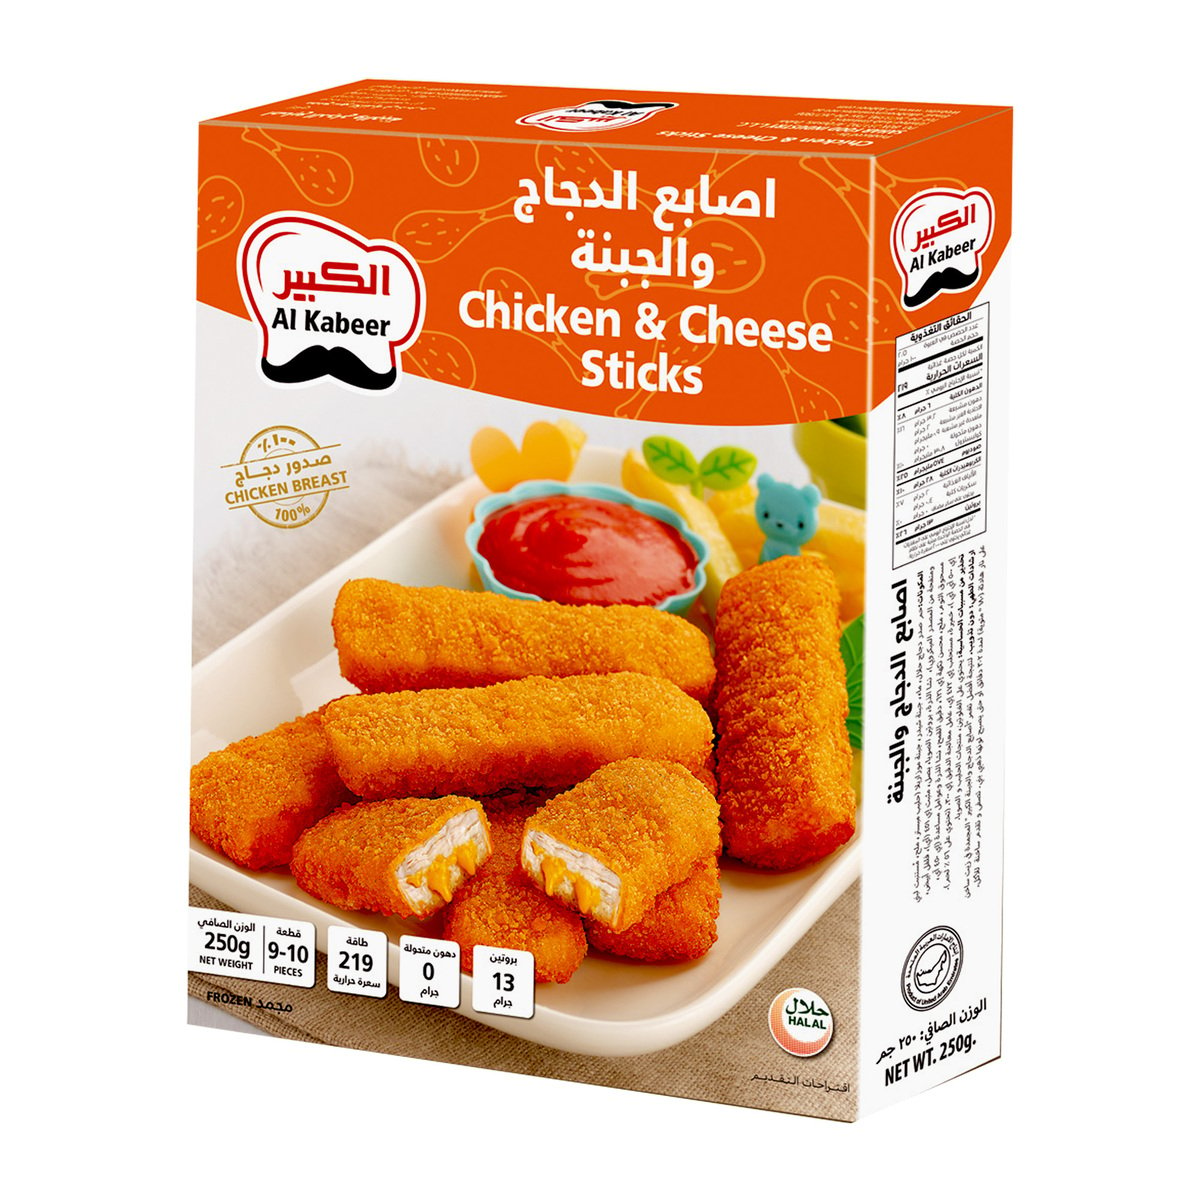 Buy Al Kabeer Chicken & Cheese Sticks 250 g Online at Best Price | Ethnic Ready Meals | Lulu Kuwait in Saudi Arabia